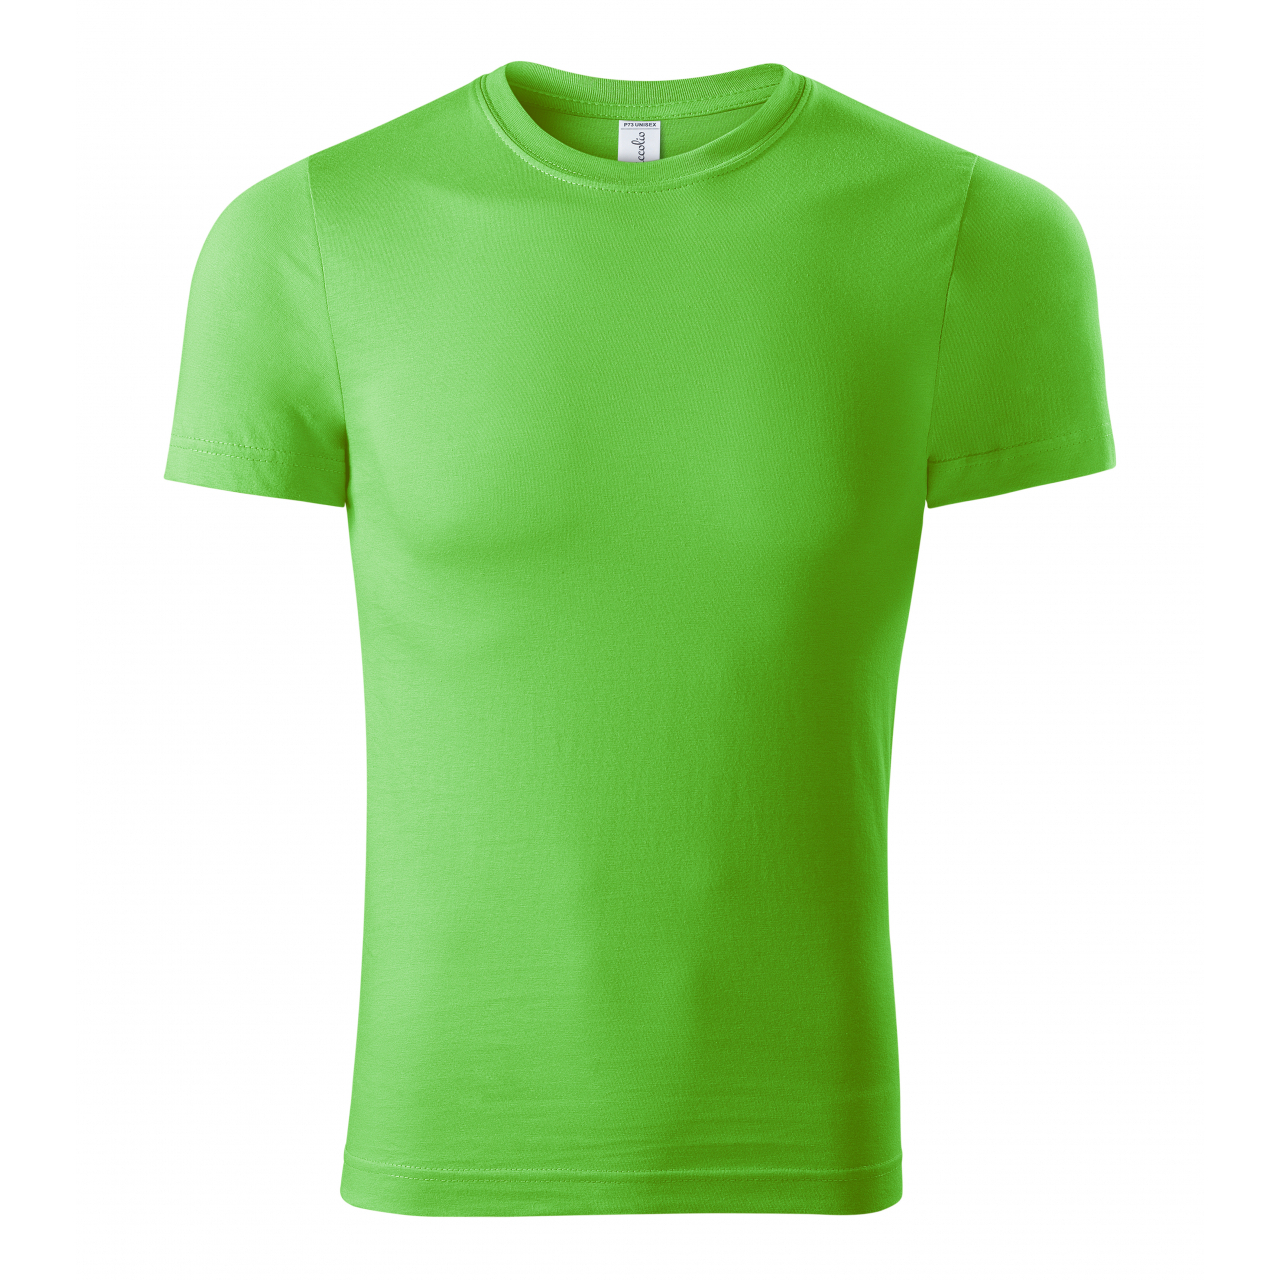 Tričko unisex Piccolio Paint - zelené svítící, XS